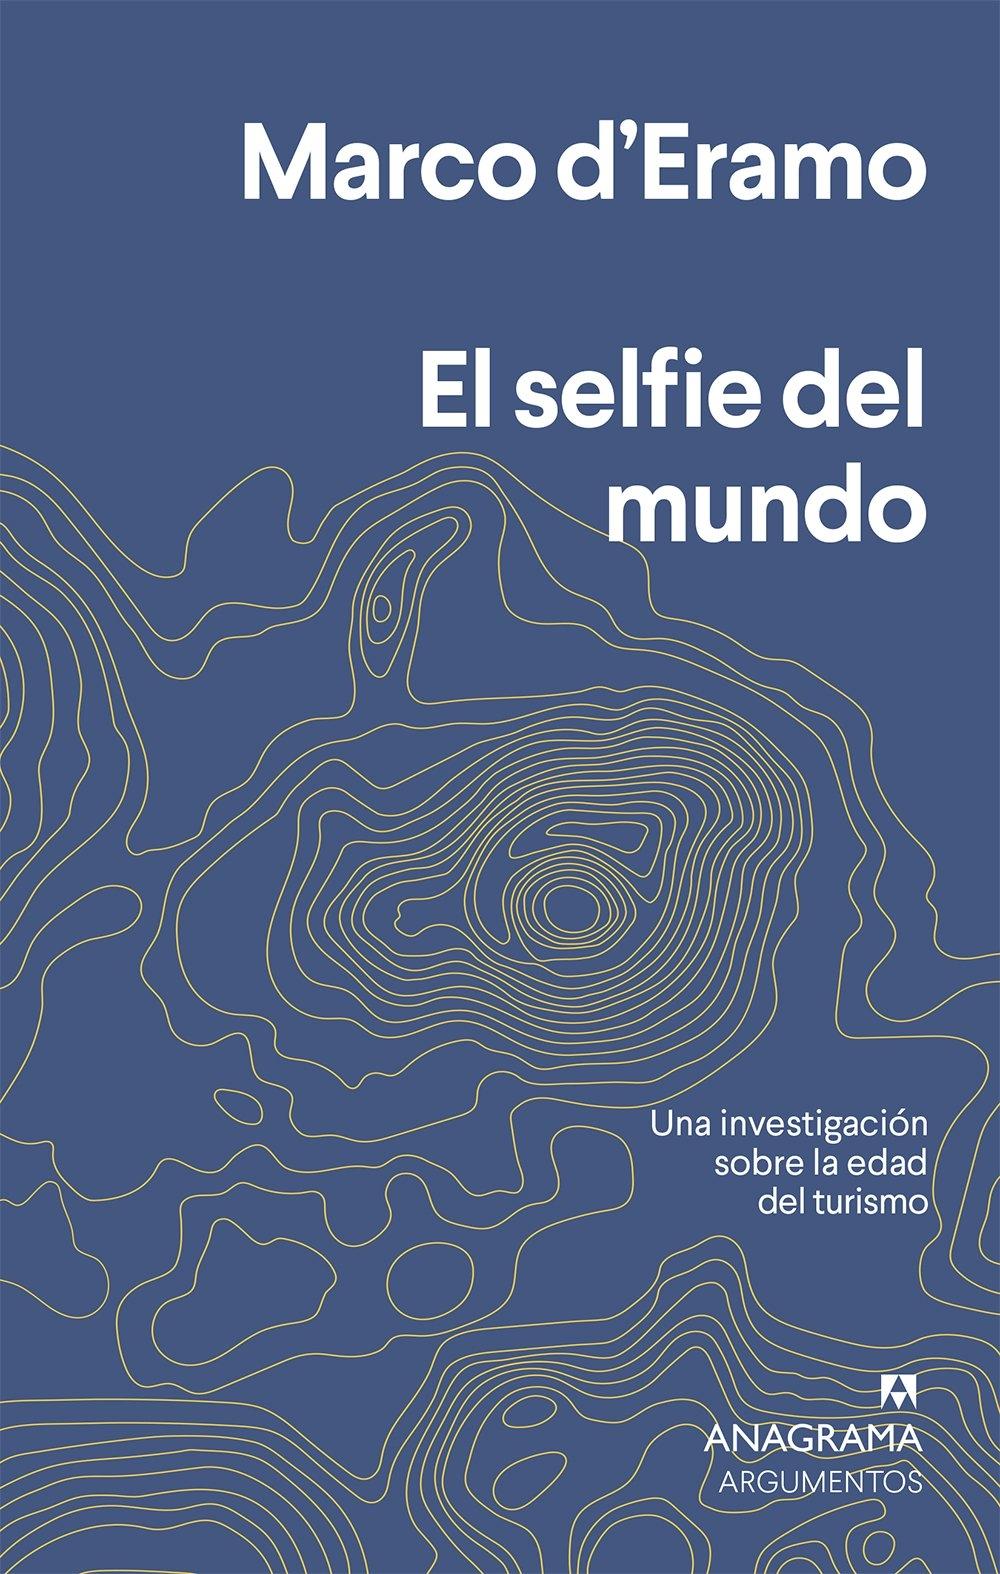 El selfie del mundo "Una investigación sobre la edad del turismo"